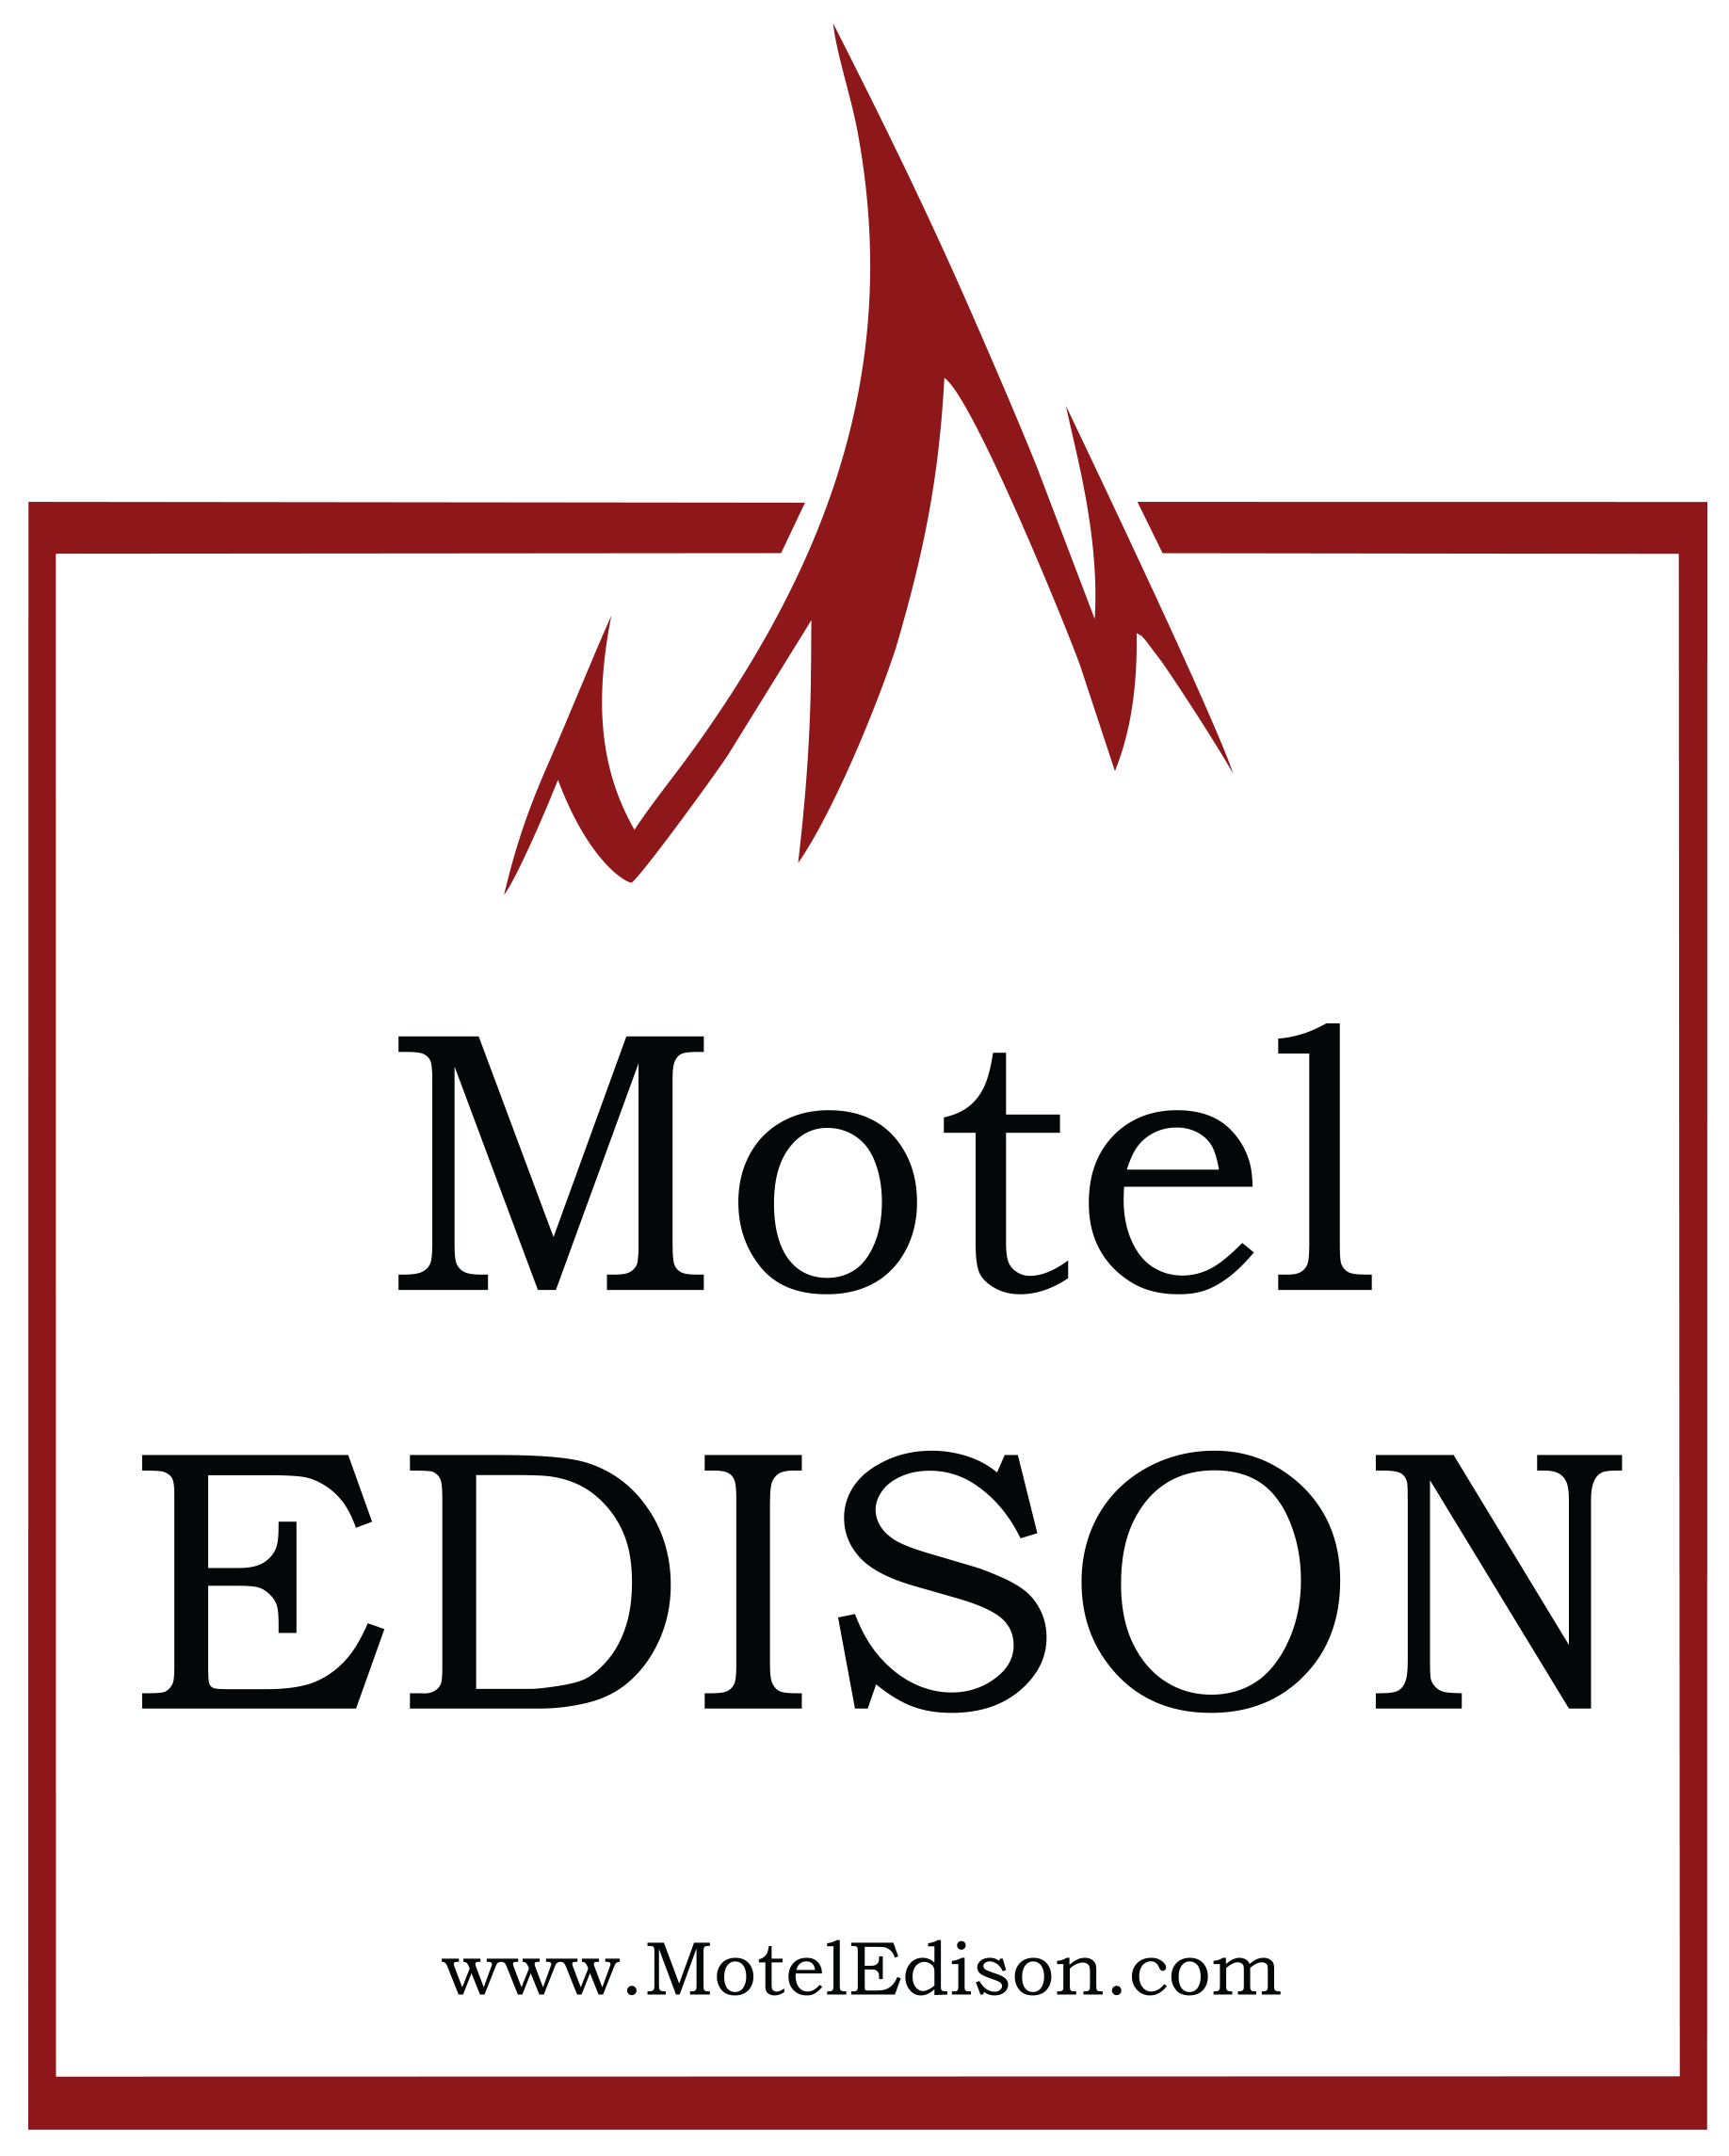 Motel Edison